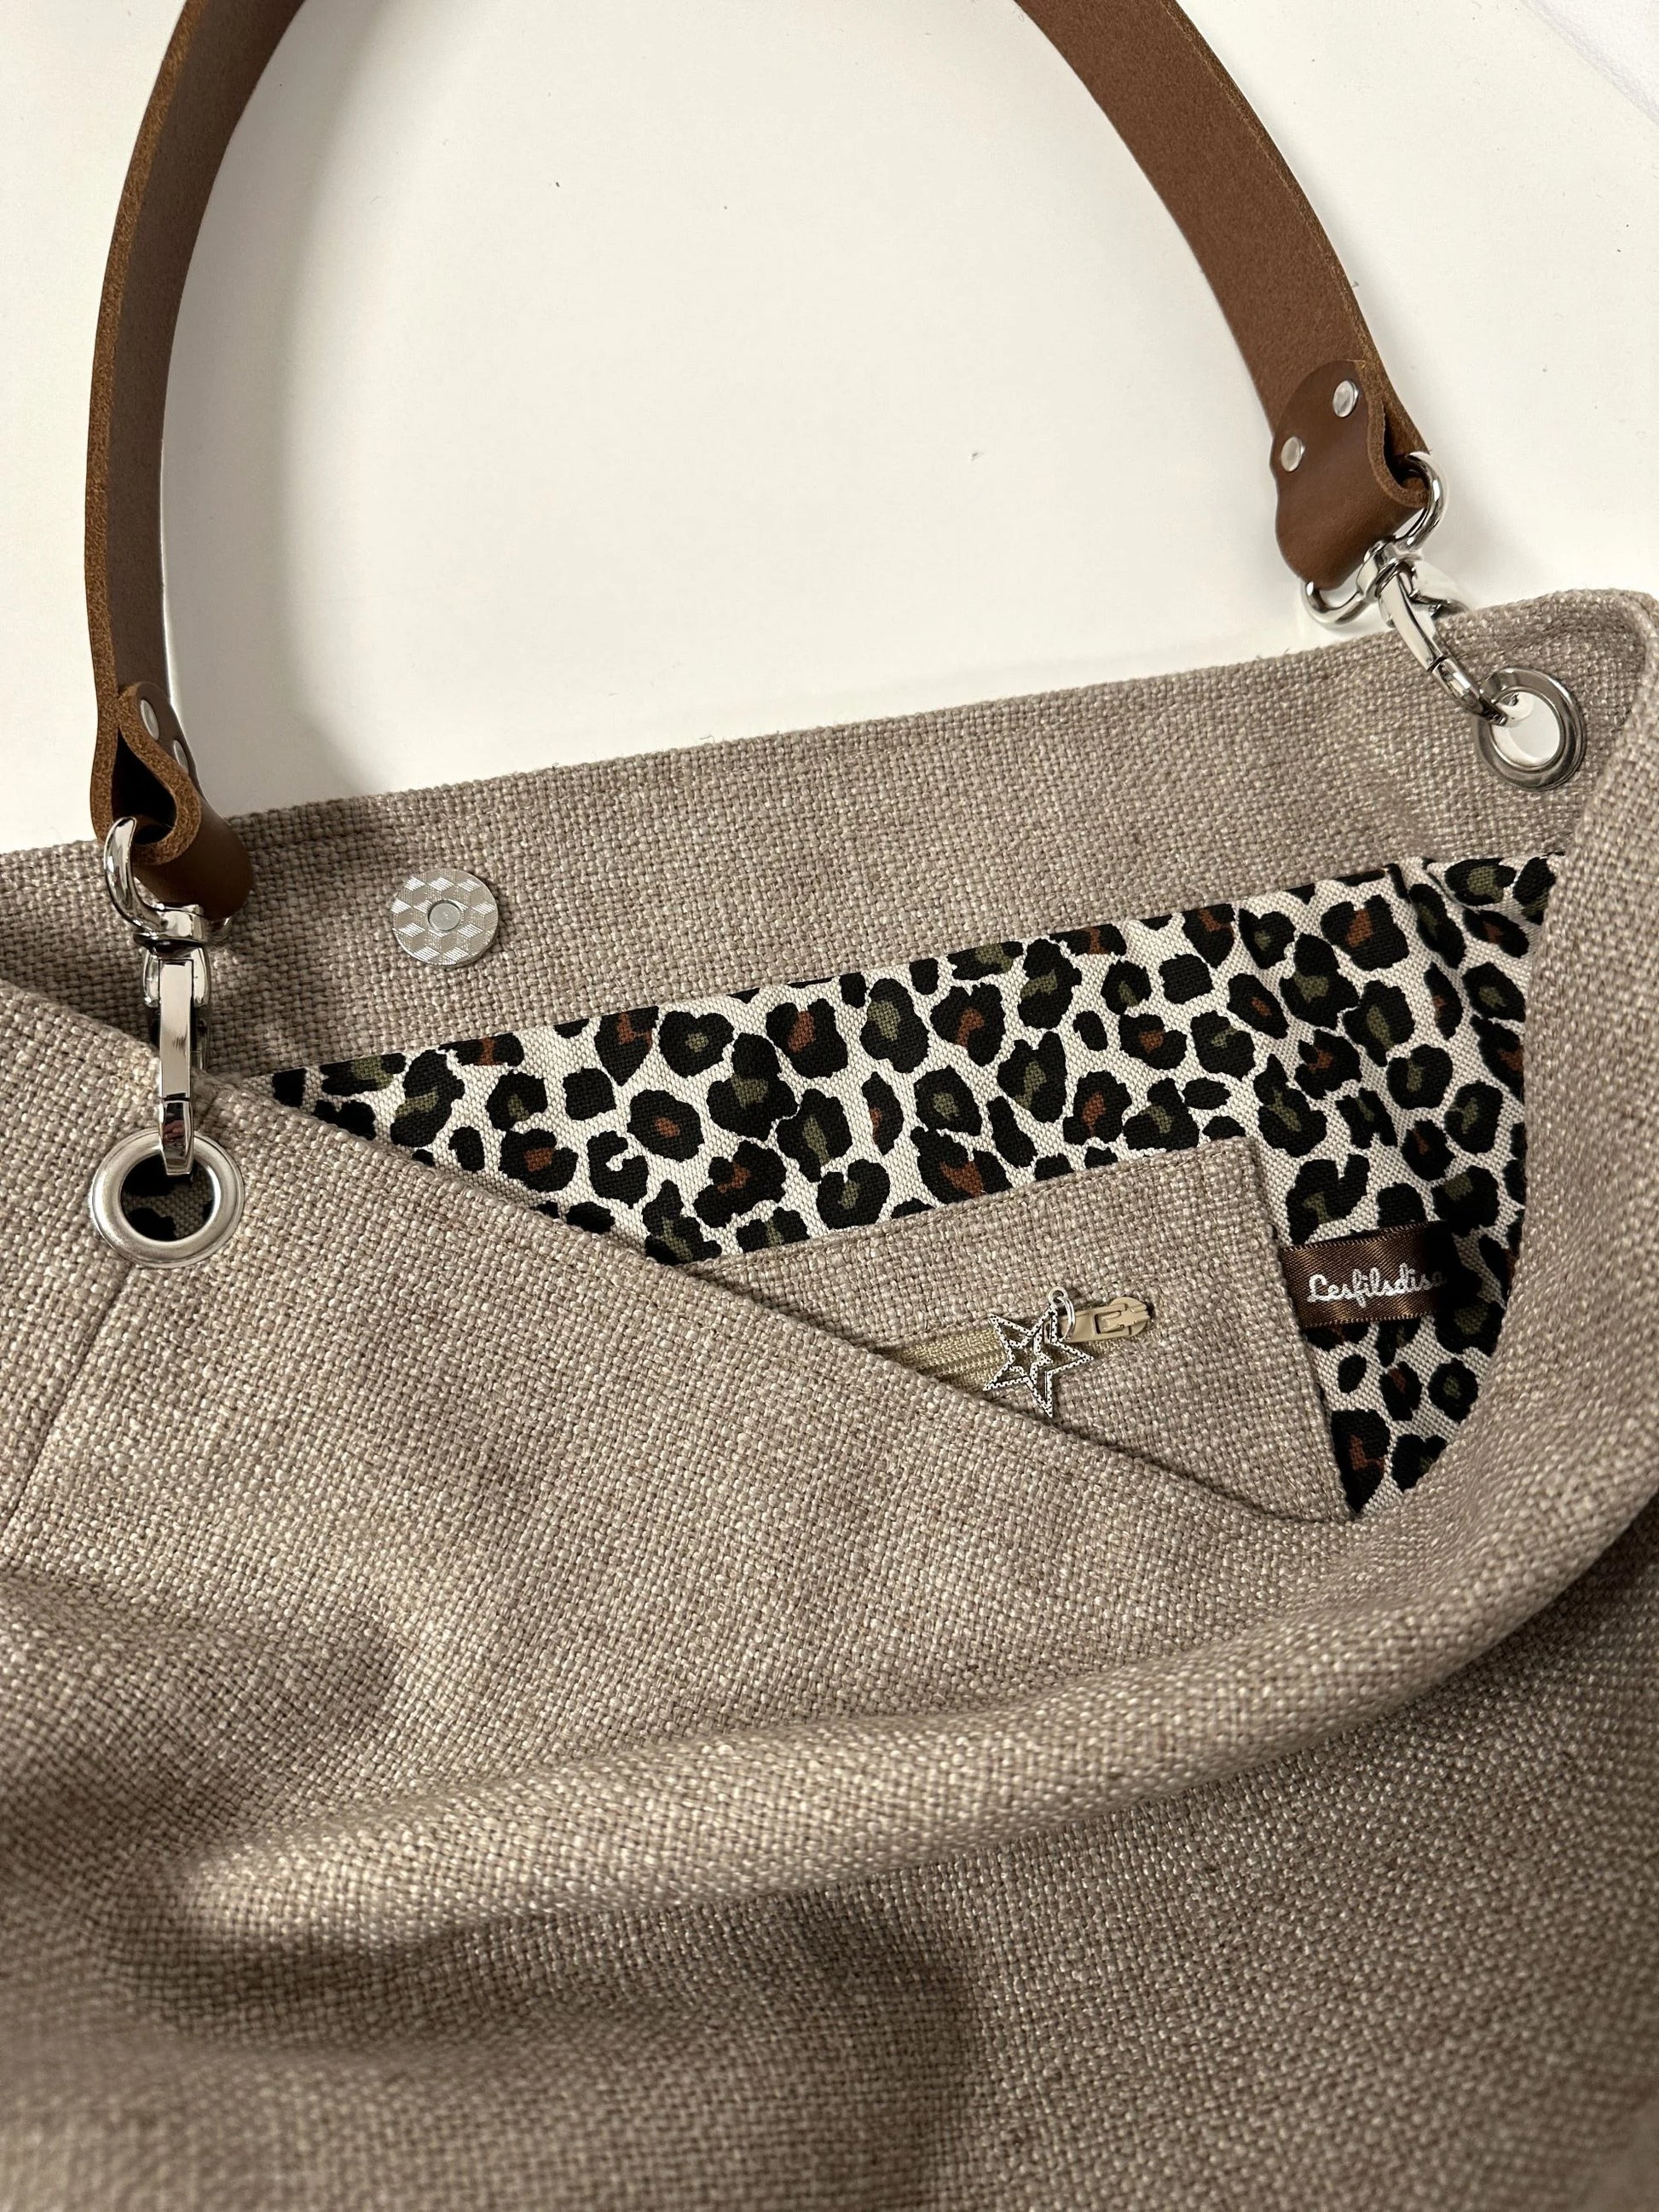 La poche intérieure zippée du sac hobo en lin beige et toile léopard, avec son anse en cuir marron amovible